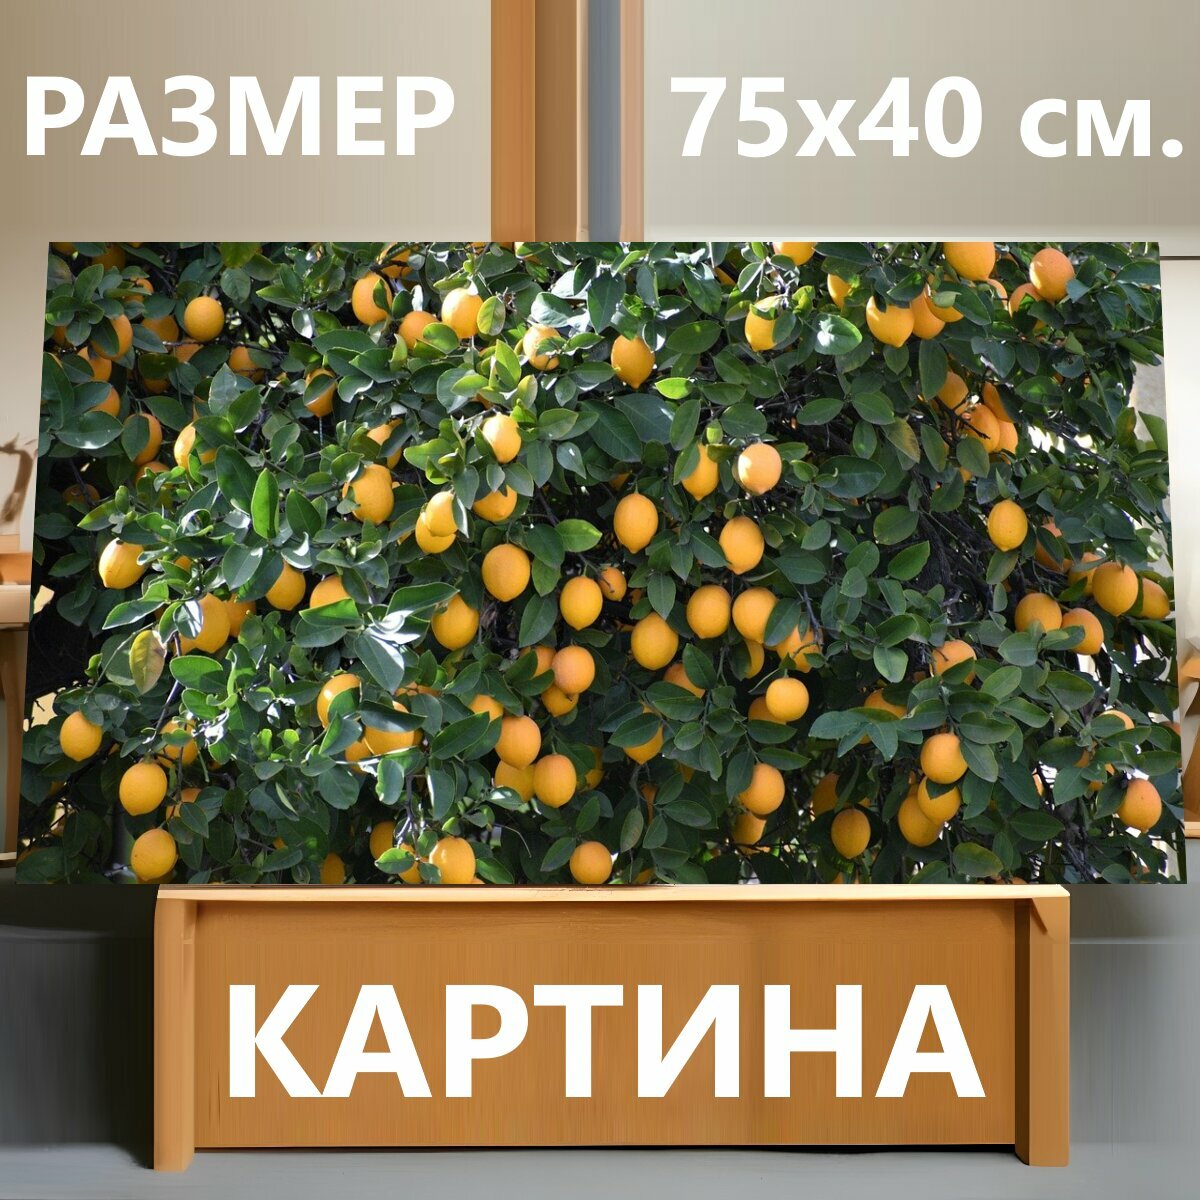 Картина на холсте "Лимон, лимонное дерево, цитрусовые" на подрамнике 75х40 см. для интерьера